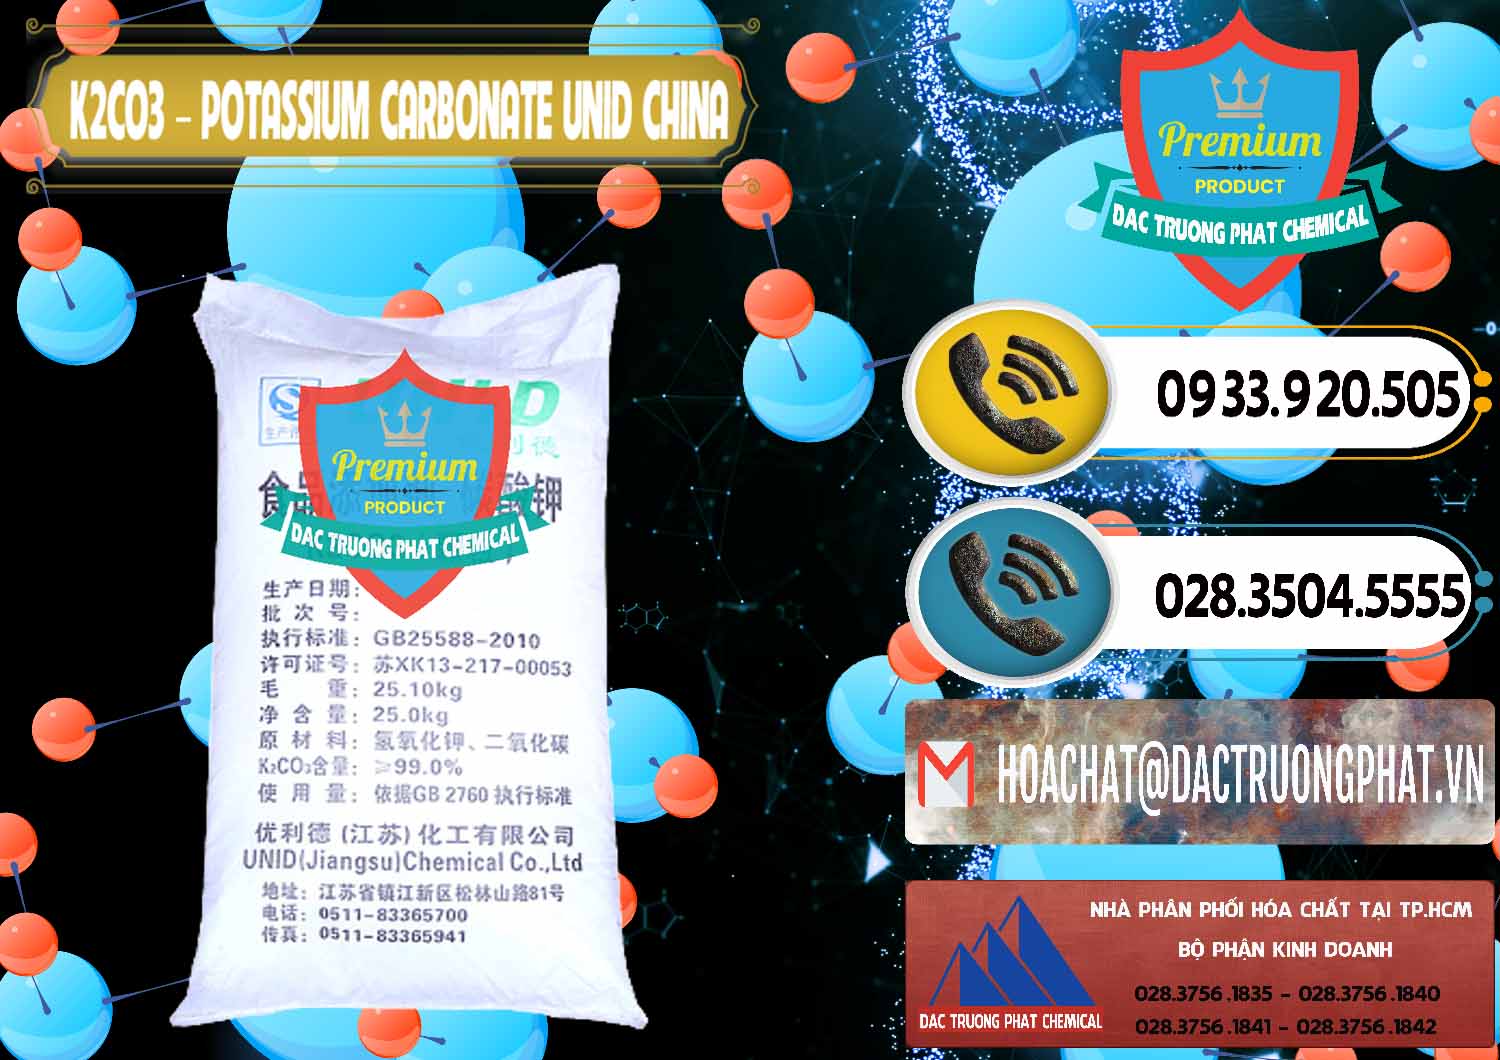 Công ty chuyên cung ứng và bán K2Co3 – Potassium Carbonate UNID Trung Quốc China - 0475 - Chuyên cung cấp - phân phối hóa chất tại TP.HCM - hoachatdetnhuom.vn